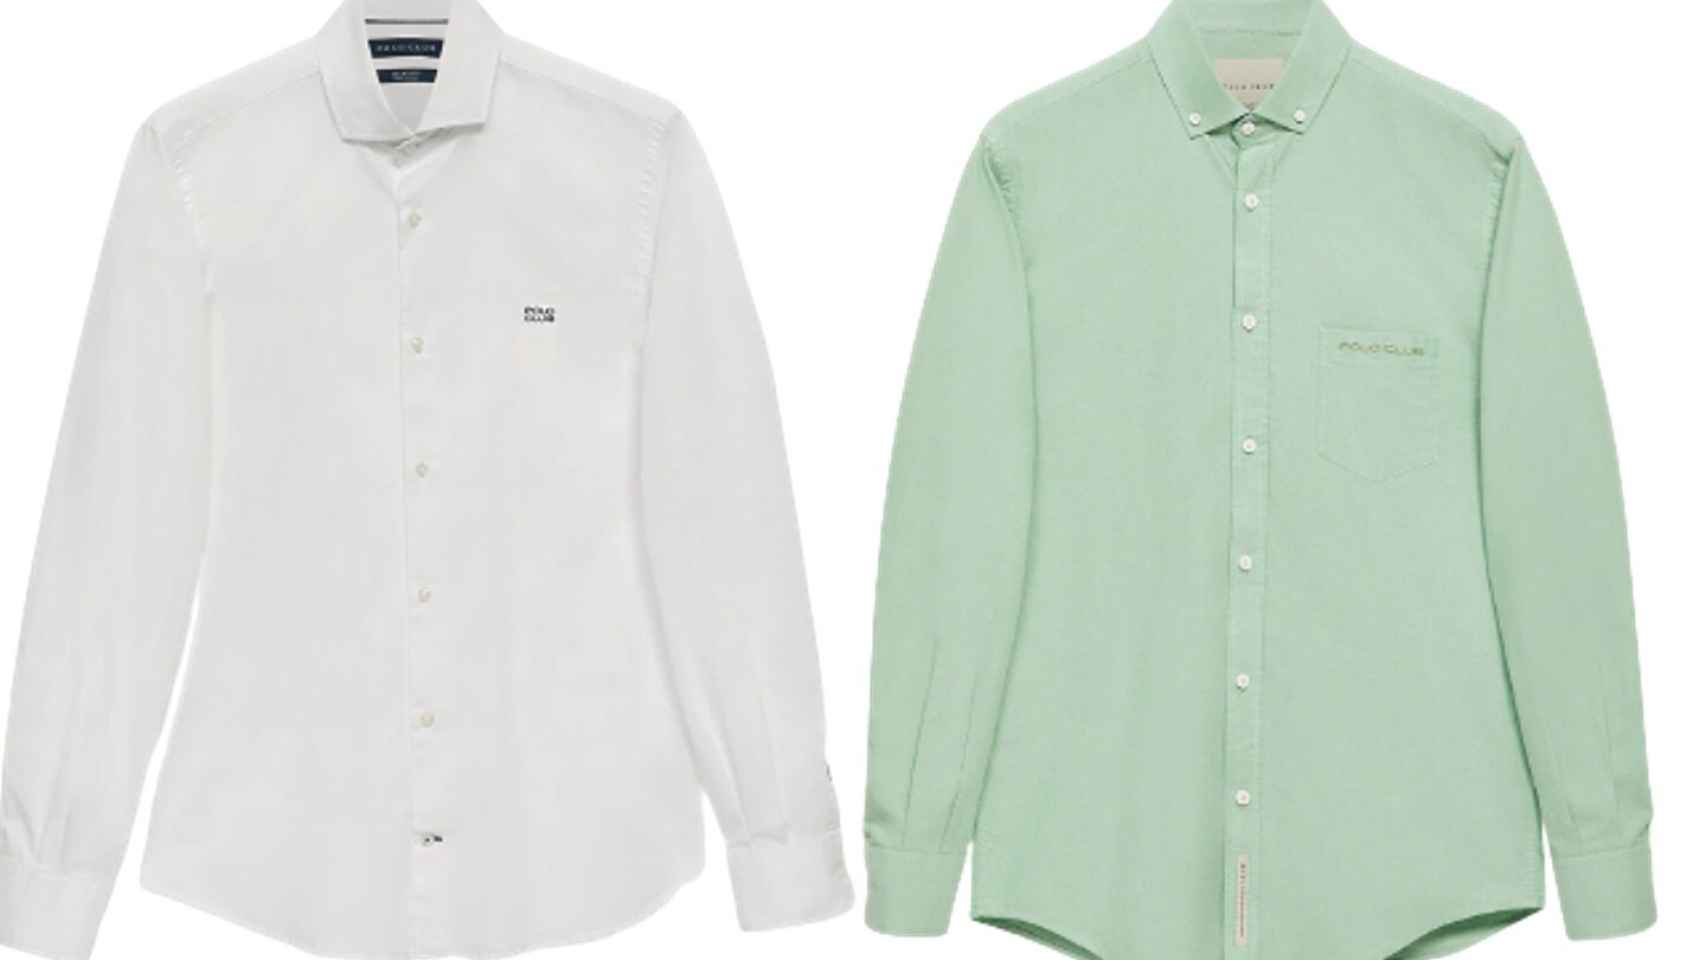 Camisa blanca de cuello italiano con logo bordado de Polo Club (Precio: 100 euros) y Camisa oxford verde con bolsillo y logo bordado (120 euros).